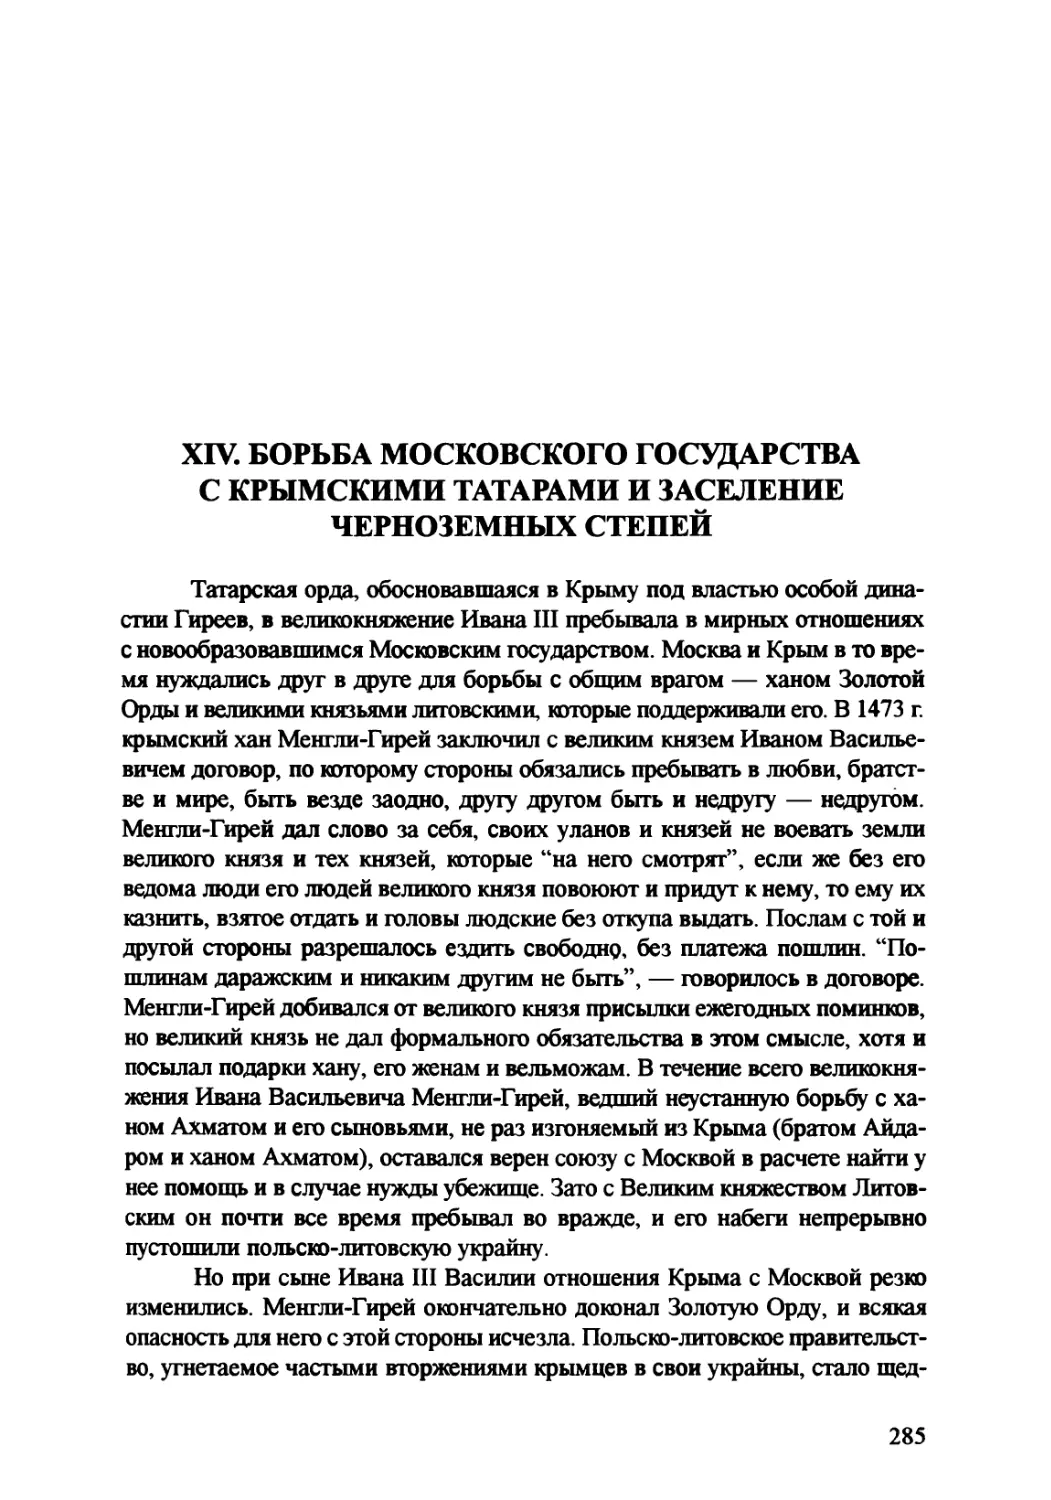 XIV. Борьба Московского государства с крымскими татарами и заселение чернозёмных степей